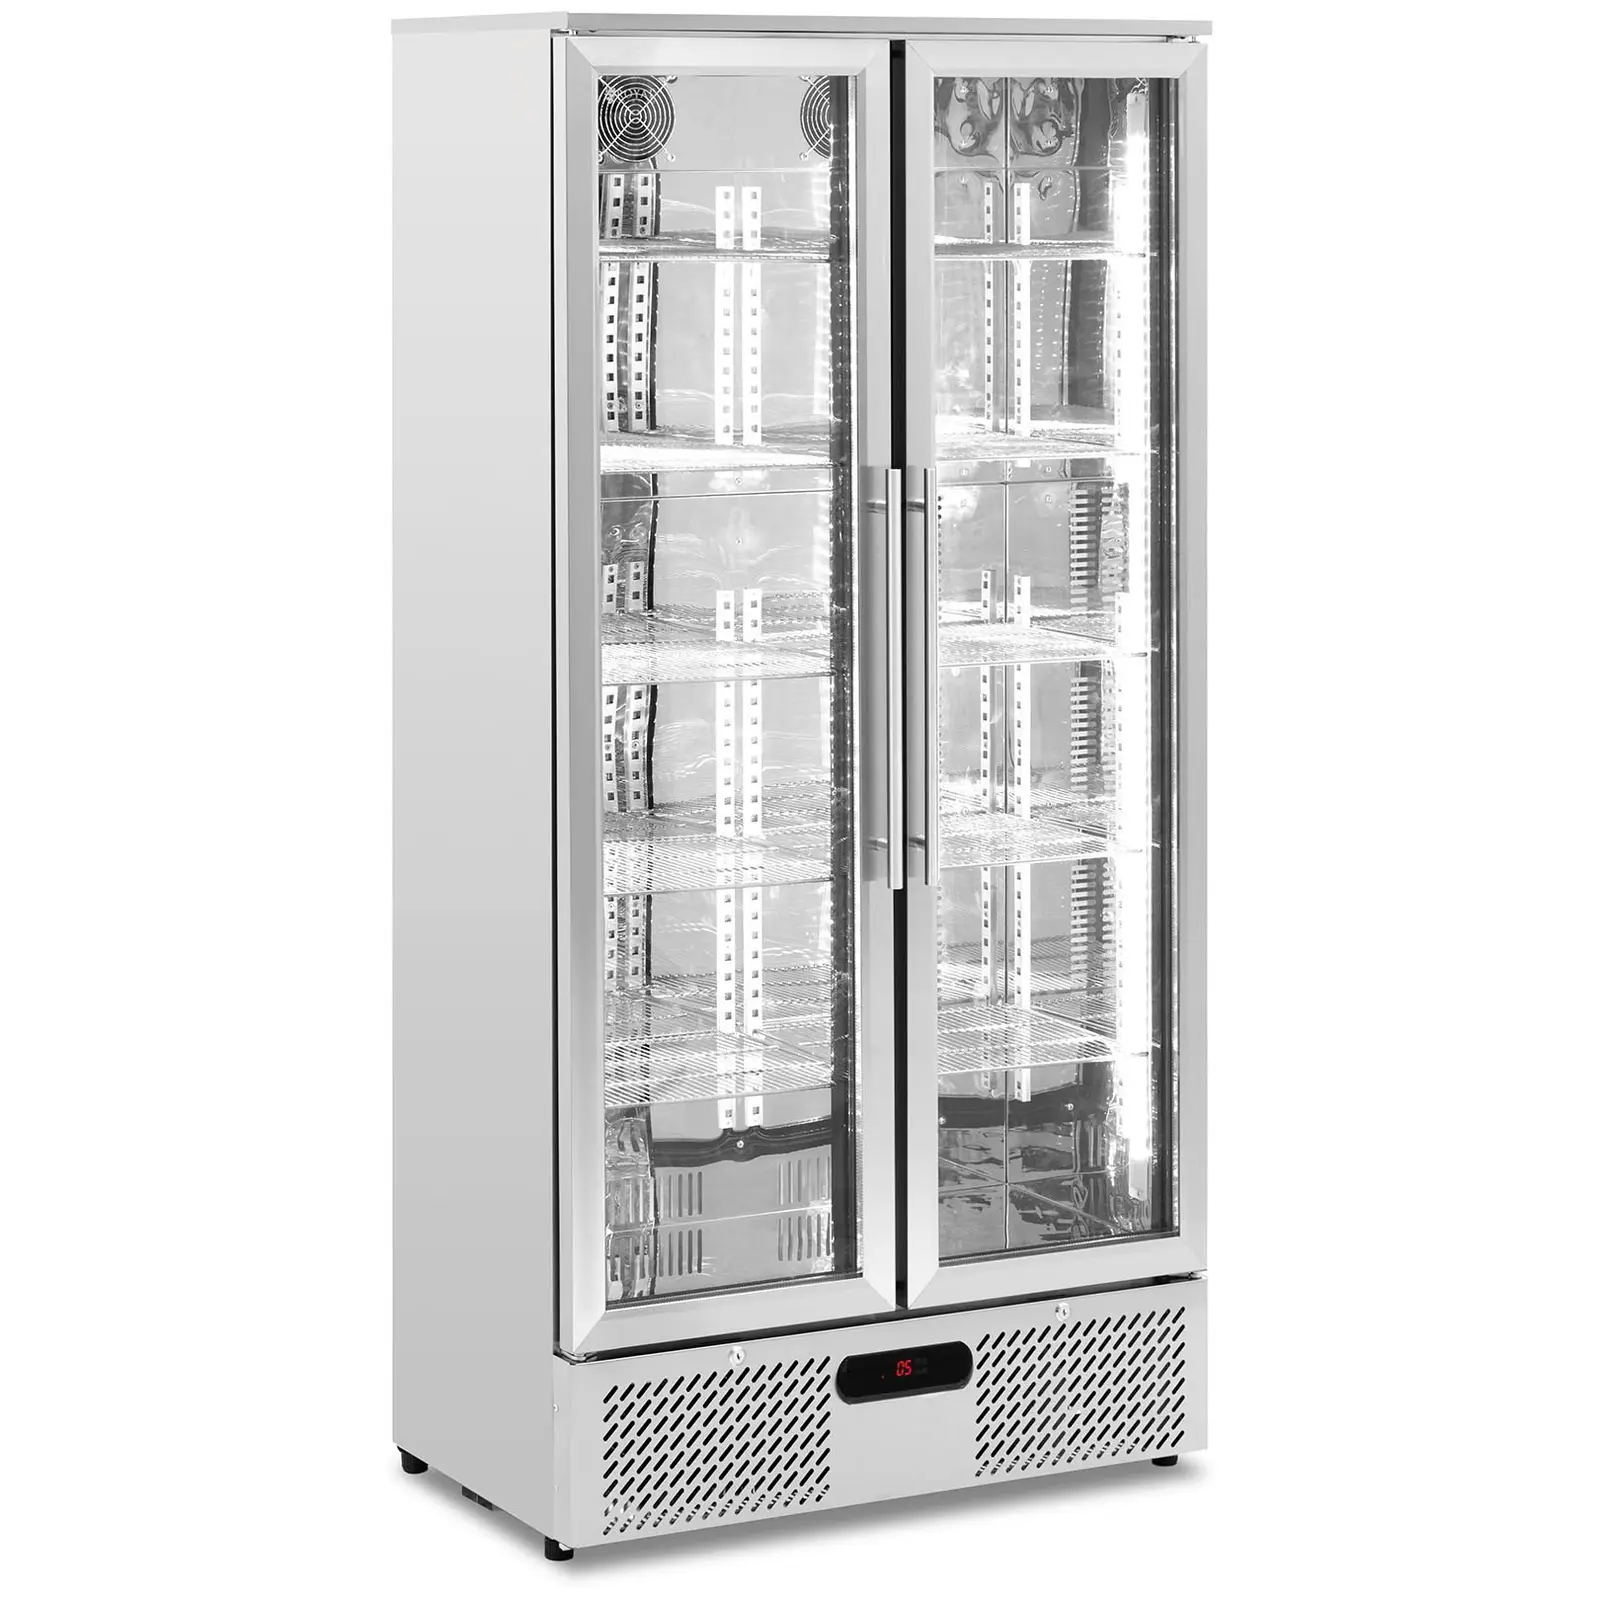 Arca refrigeradora - 458 l - Royal Catering - aço inoxidável